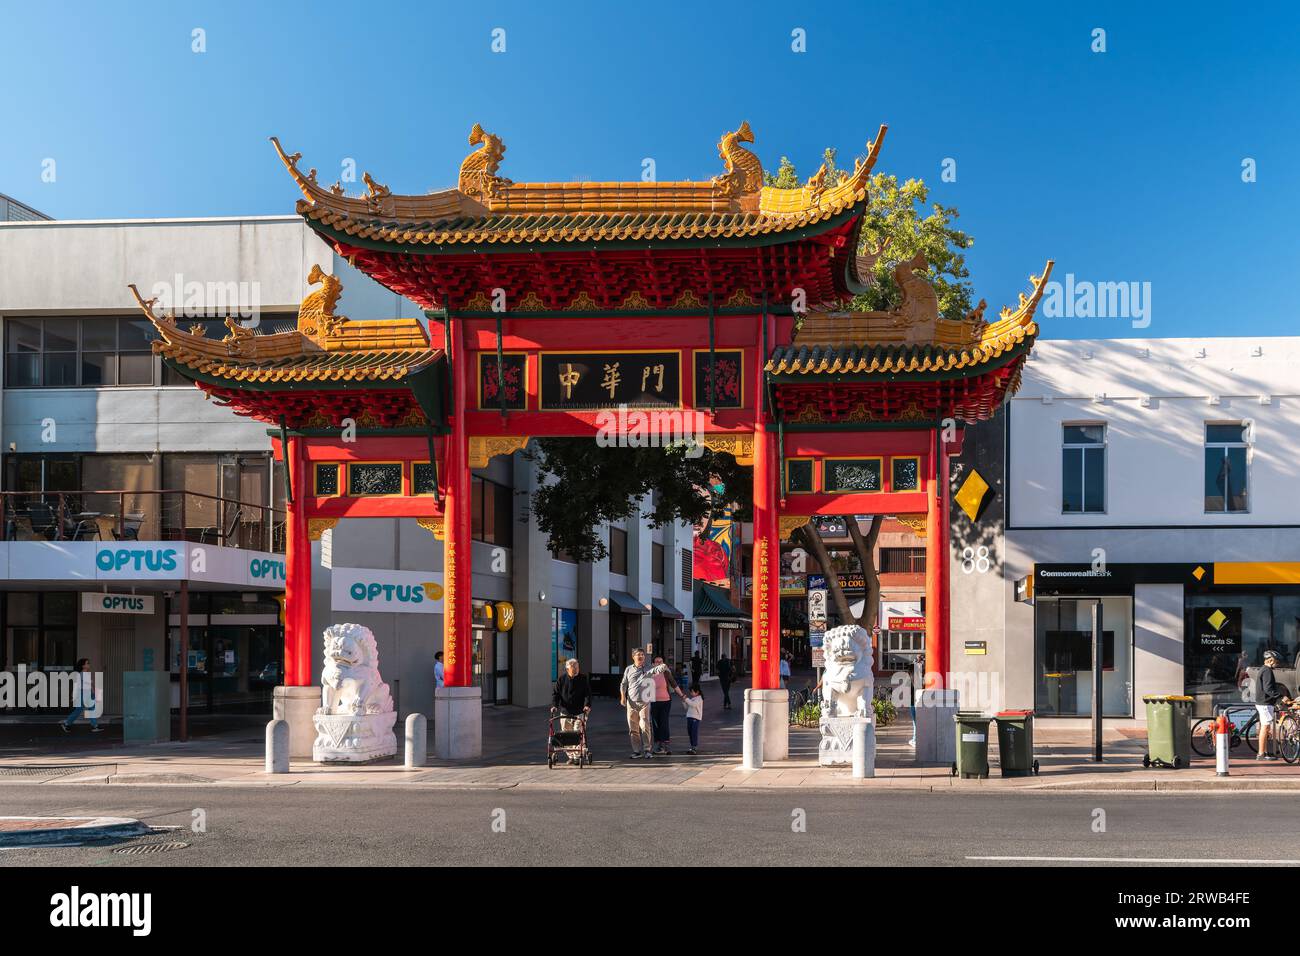 Adelaide, Australien - 19. Dezember 2020: Adelaide Chinatown Arch mit Menschen im Stadtzentrum, Blick auf den Haupteingang durch Paifang auf der Gouger Str Stockfoto